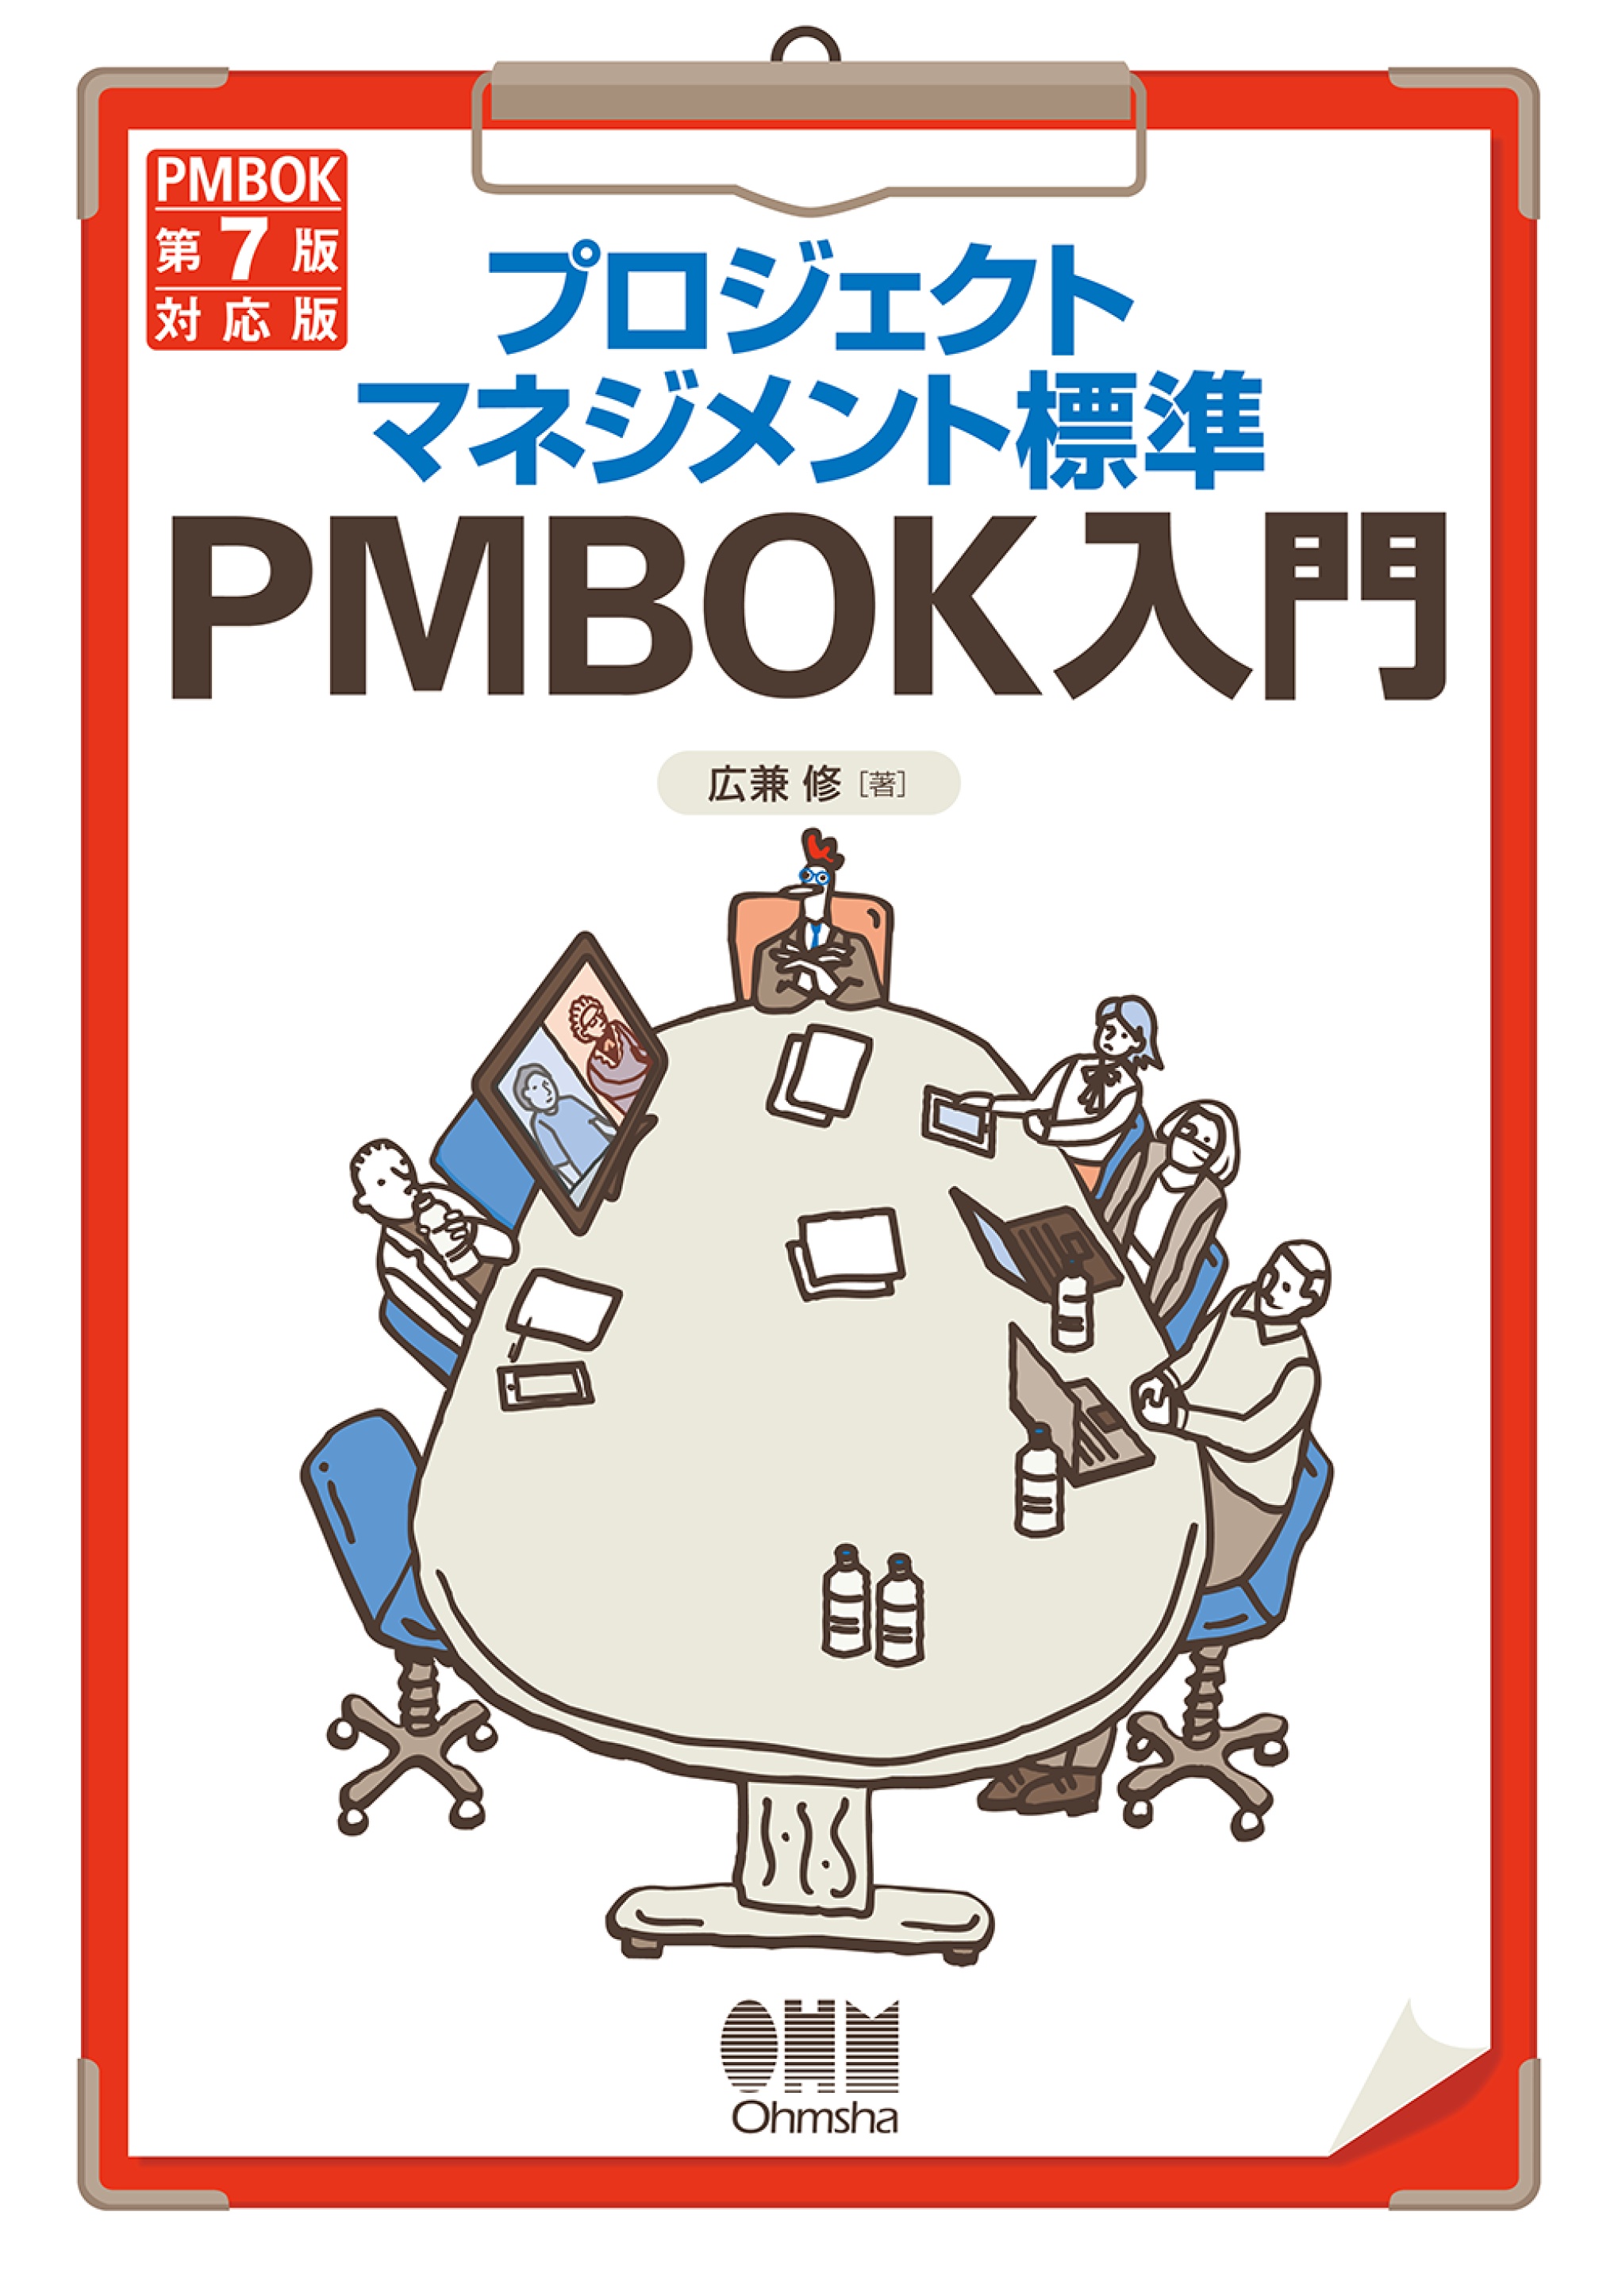 プロジェクトマネジメント知識体系ガイド(PMBOKガイド)第7版+ 